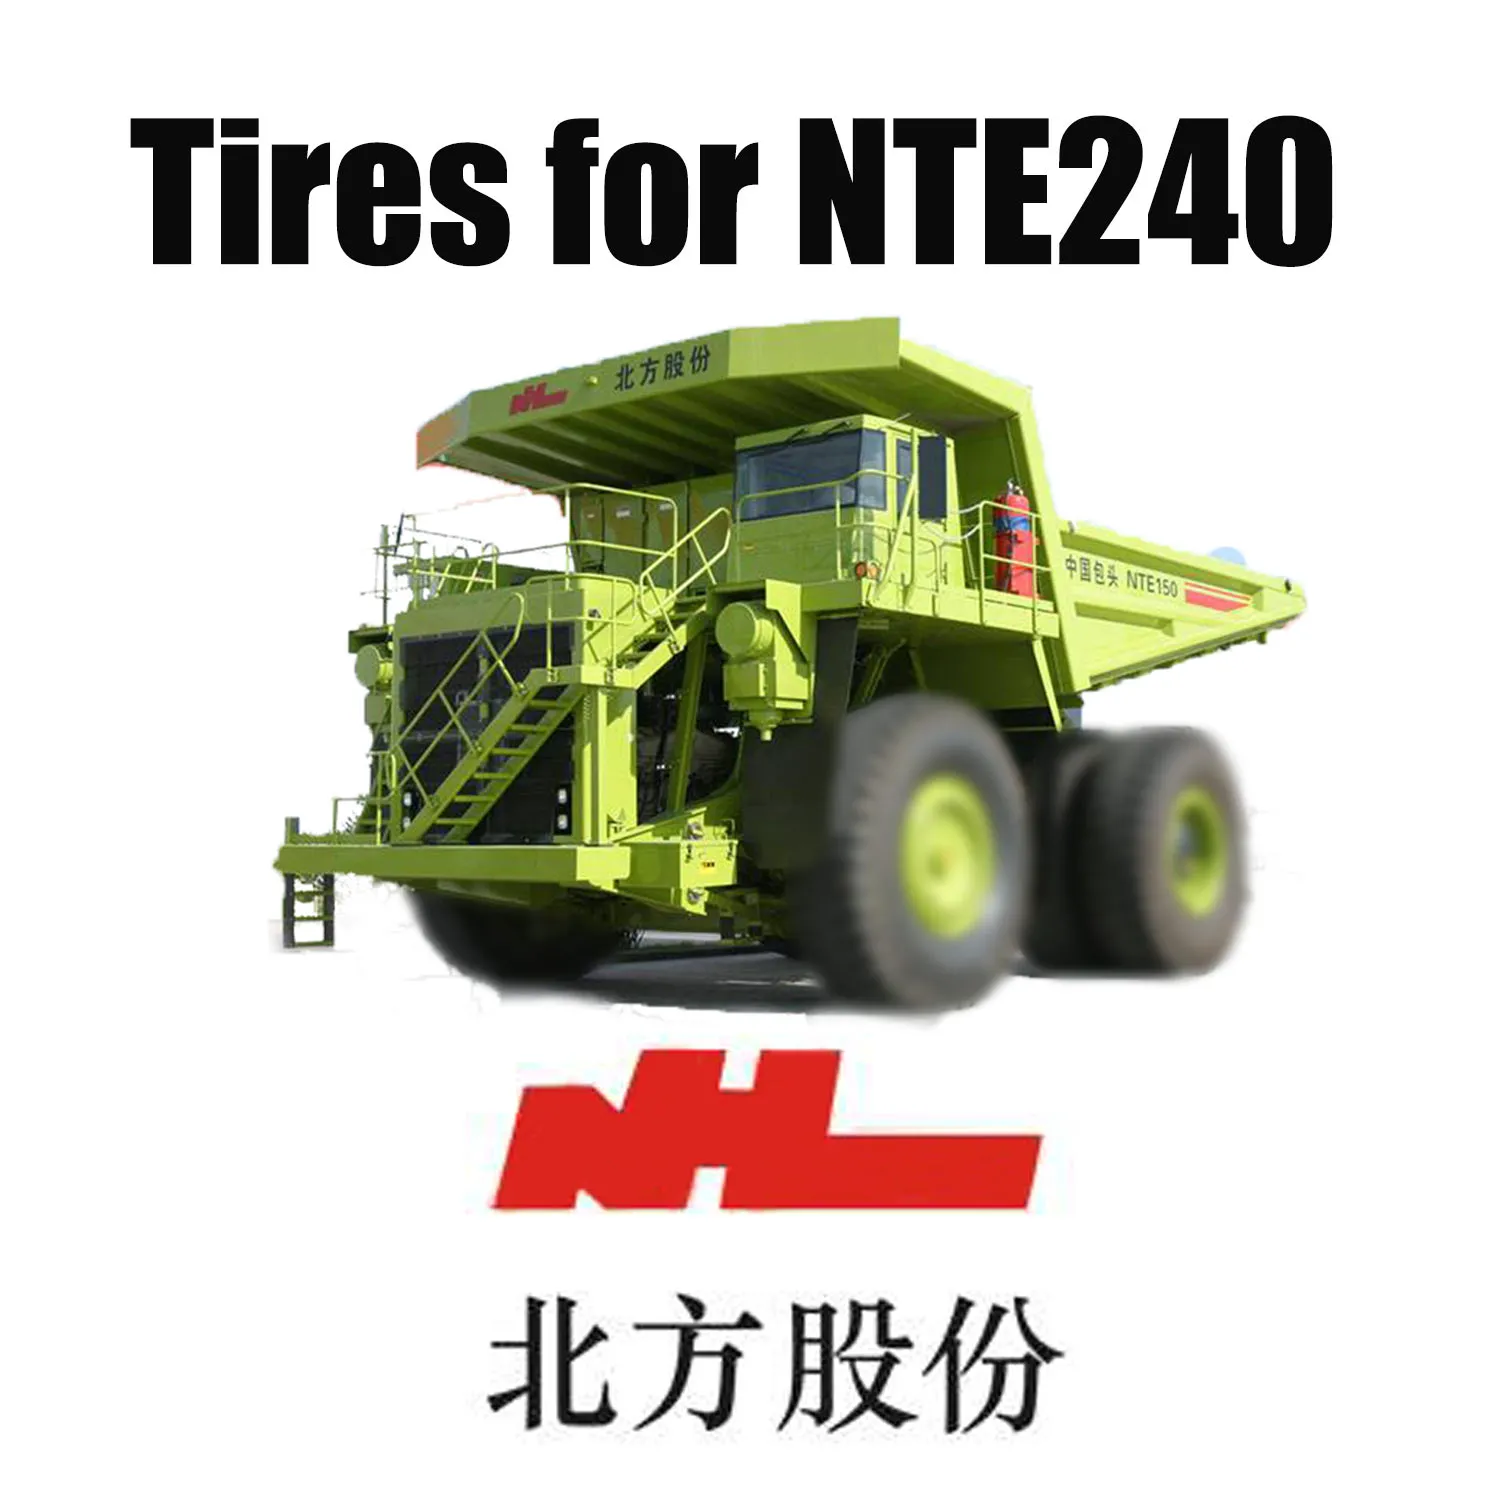 Equipamento de transporte pesado NTE 240 equipado com pneus OTR 46/90R57 fora de estrada